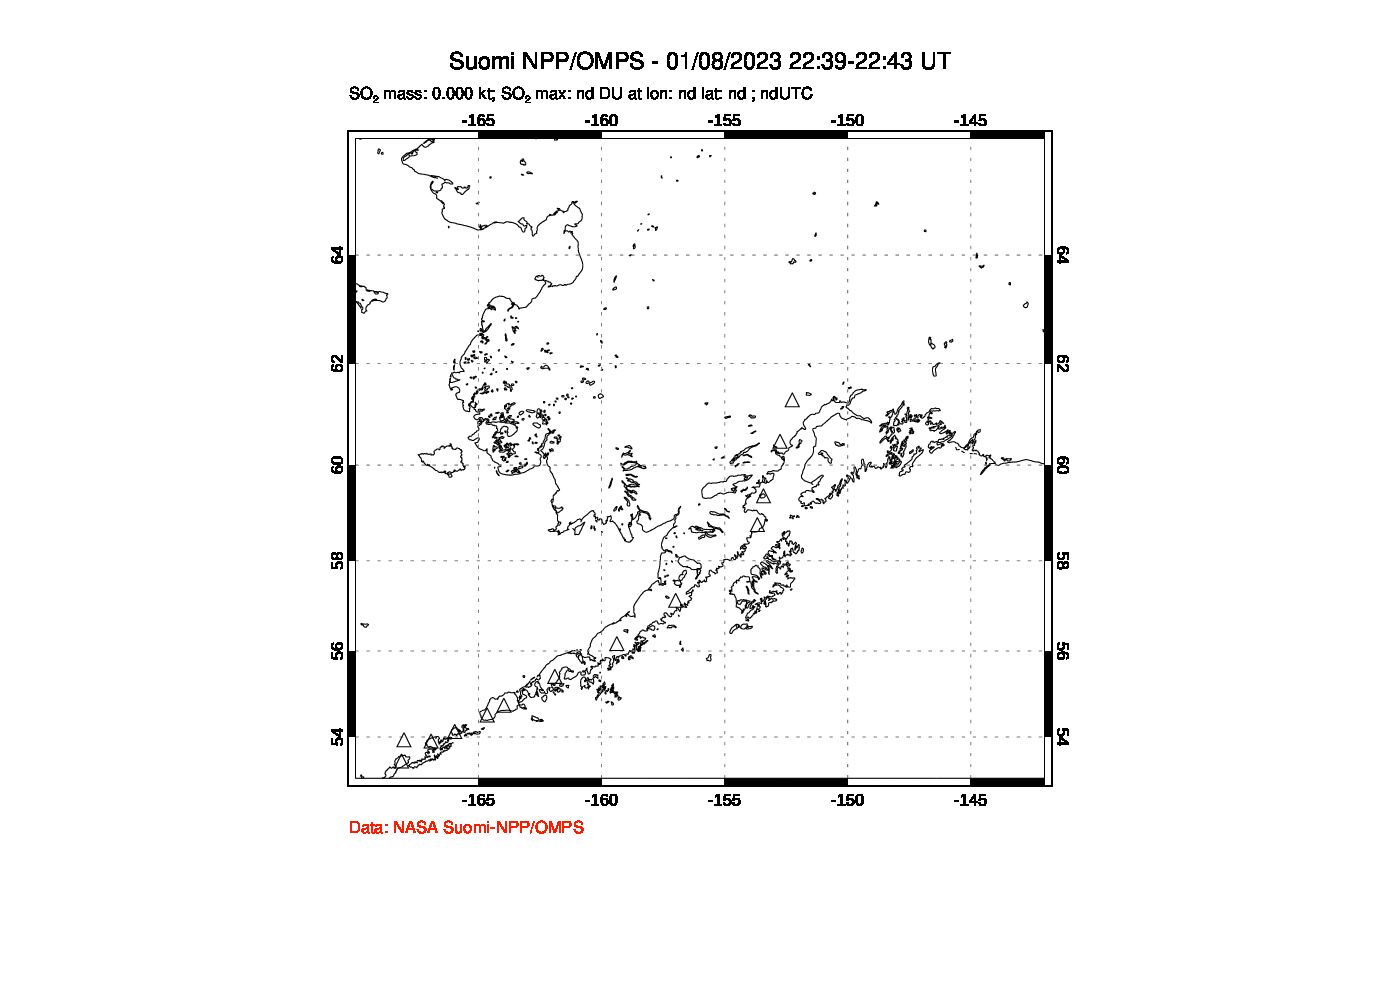 A sulfur dioxide image over Alaska, USA on Jan 08, 2023.